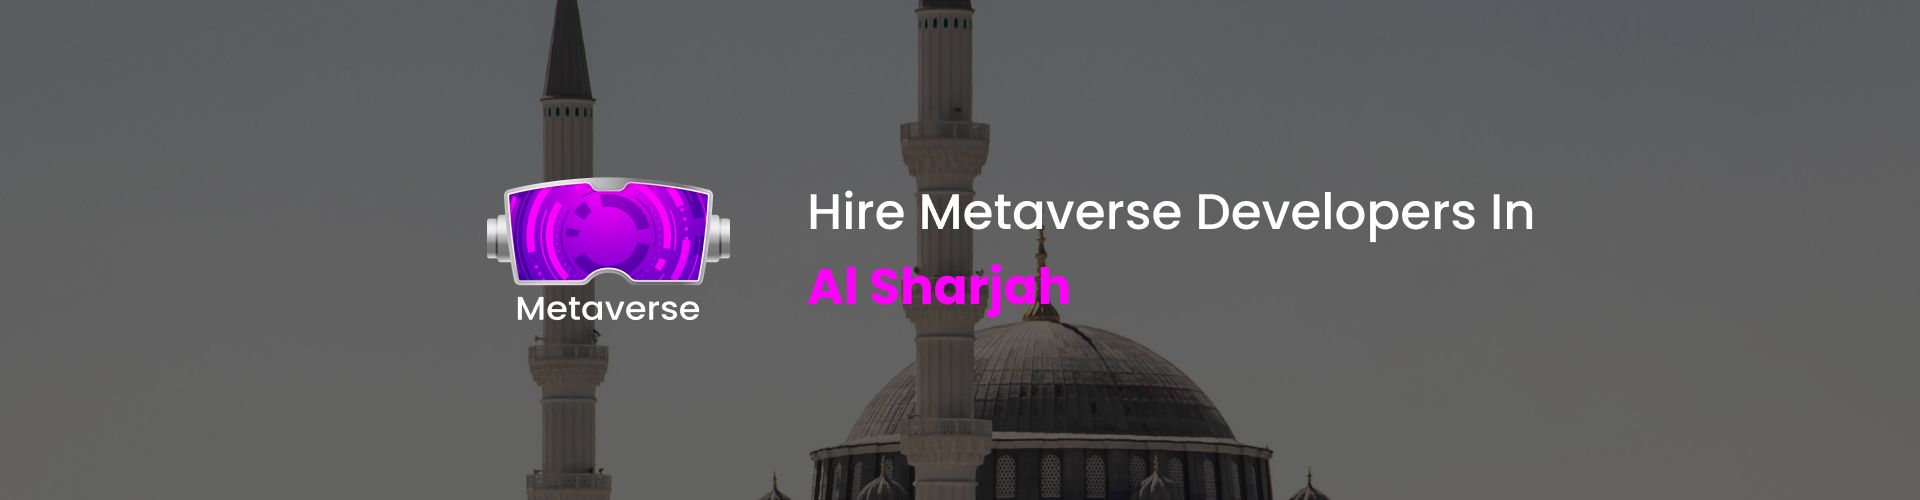 metaverse developers in al sharjah